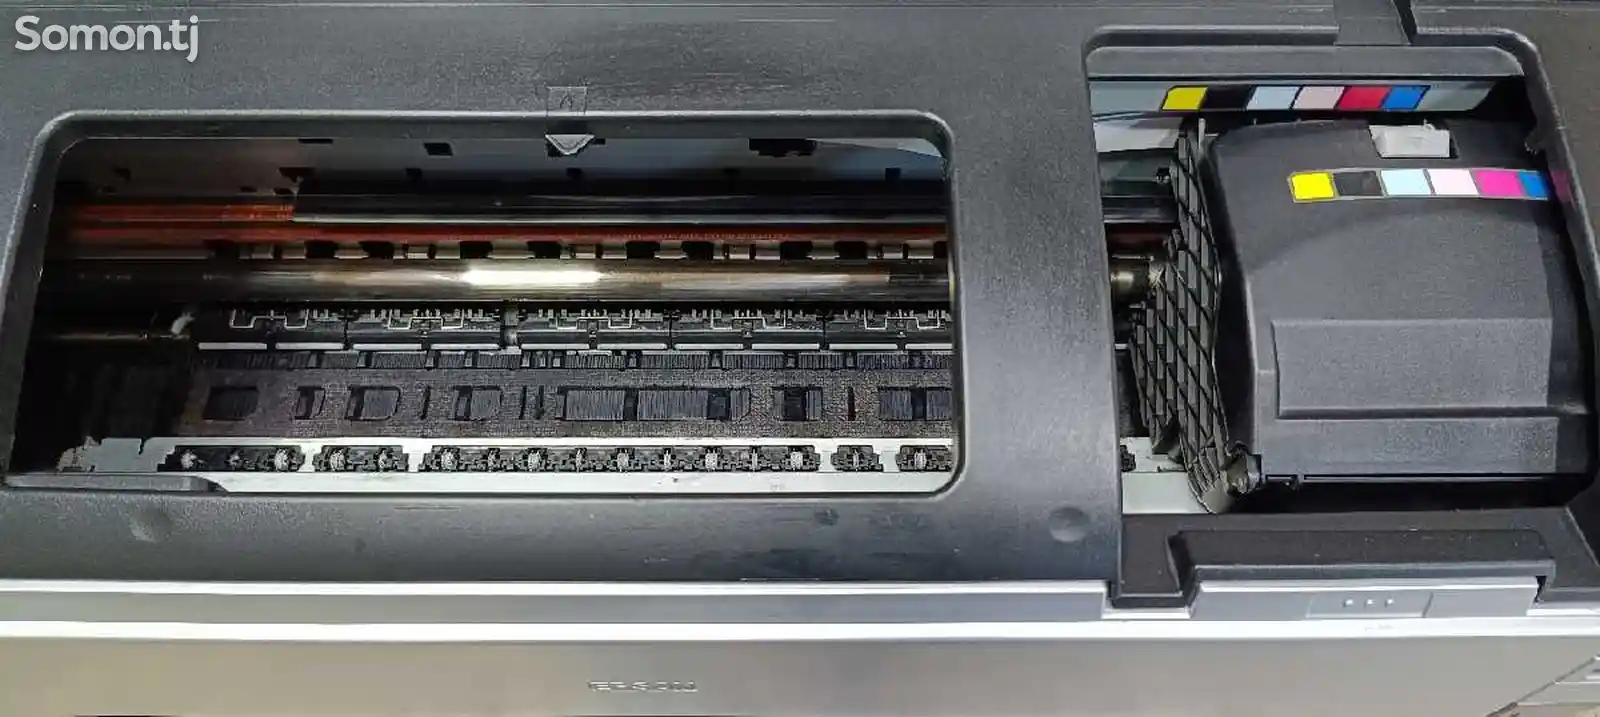 Принтер Epson 1410 a3-3